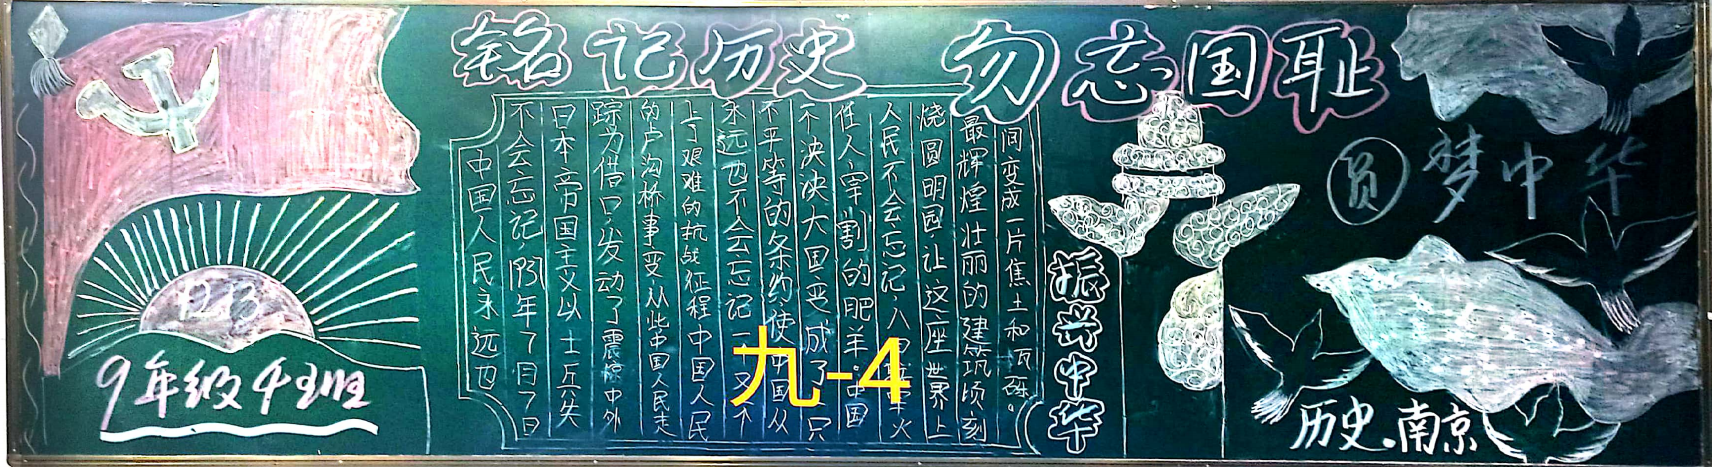 铭记历史勿忘国耻纪念南京大屠杀九年级黑板报展示